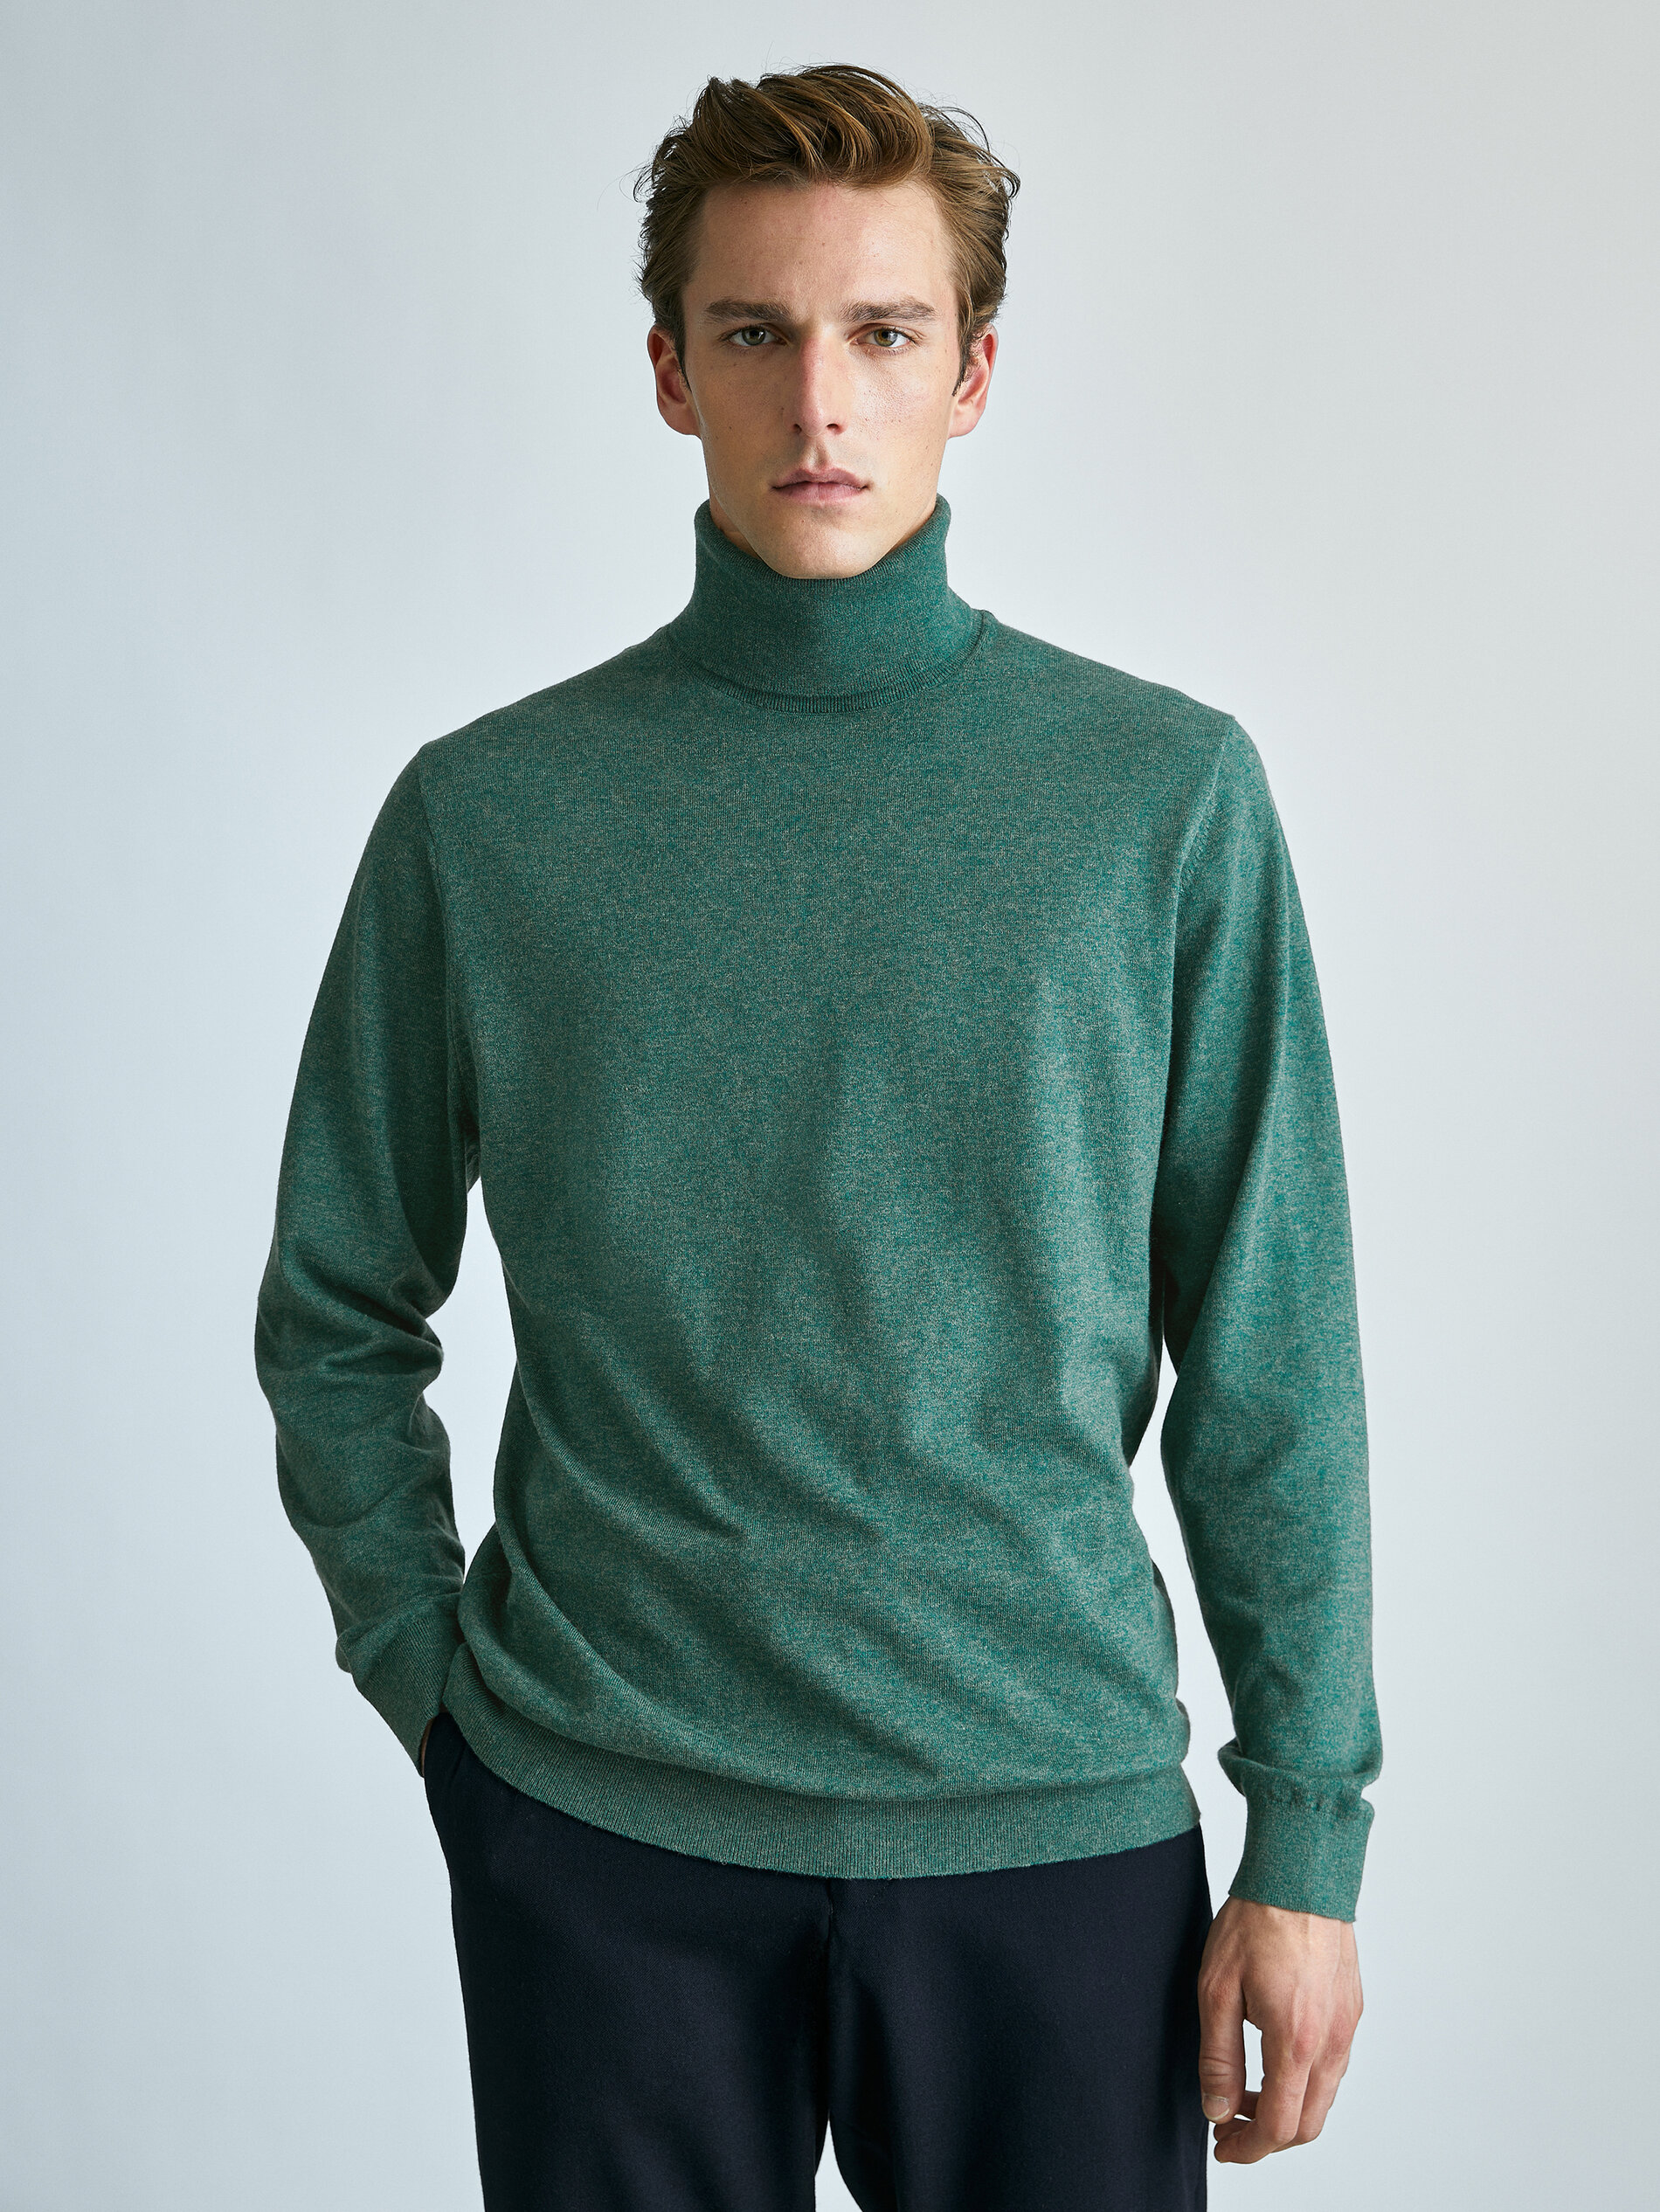 Massimo Dutti Cotton/Wool Turtleneck Sweater - Big Apple Buddy